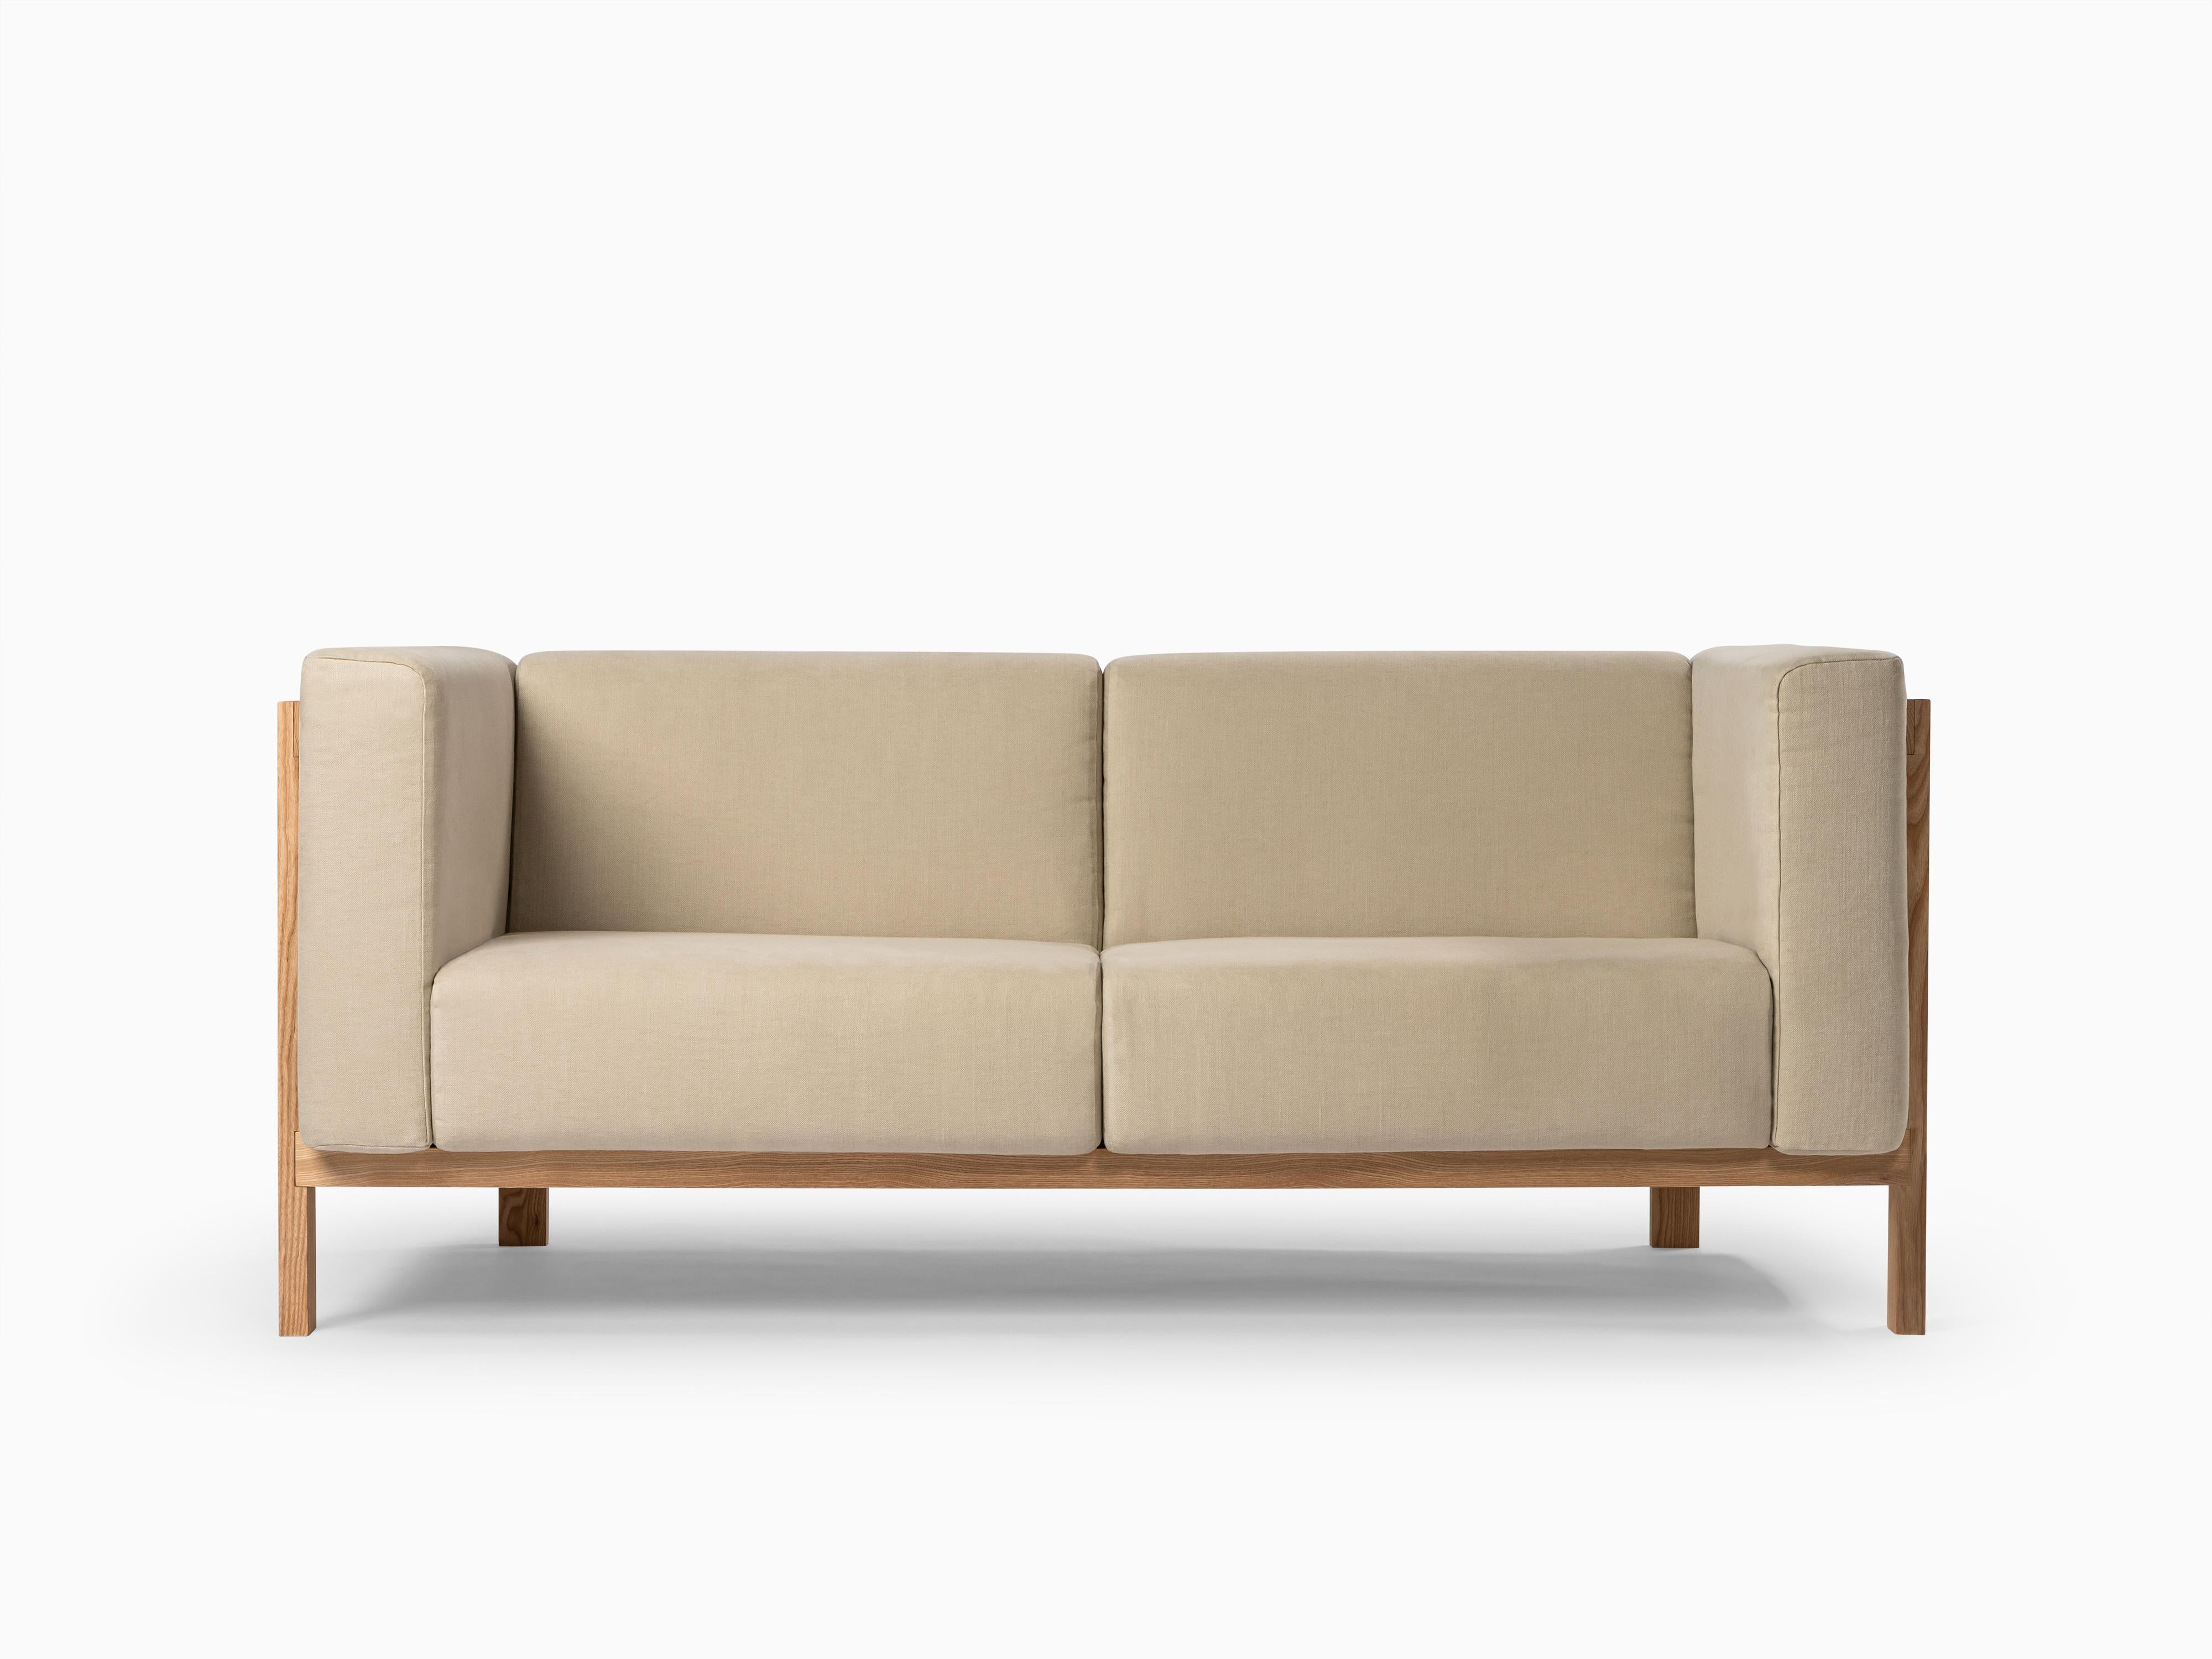 Inspiriert von der anmutigen Mechanik von Aufzügen, hat das Sofa LIFT sowohl seinen Namen als auch seine Ästhetik von diesem Einfluss. Dieses von Julien Renault entworfene Meisterwerk ist eine Hommage an raffiniertes Design, fachmännische